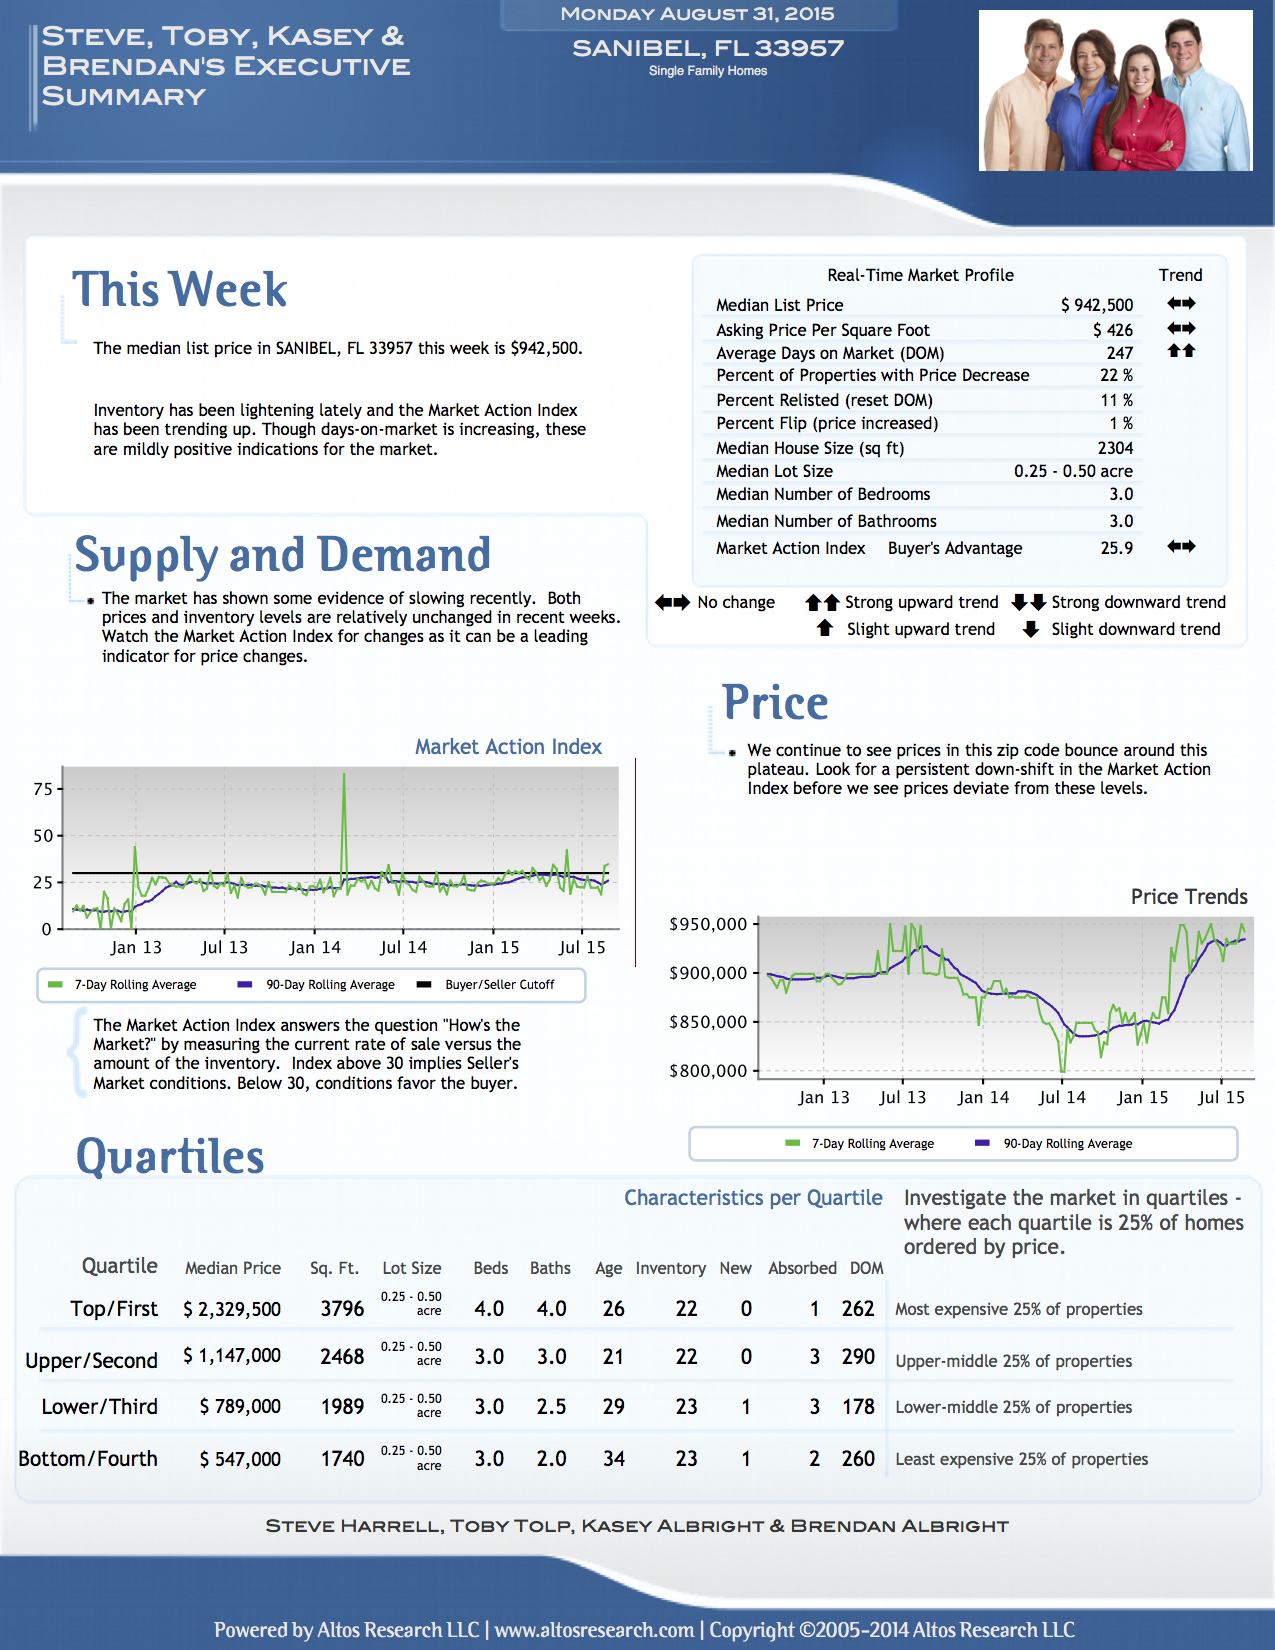 Sanibel Market Report Aug 31, 2015